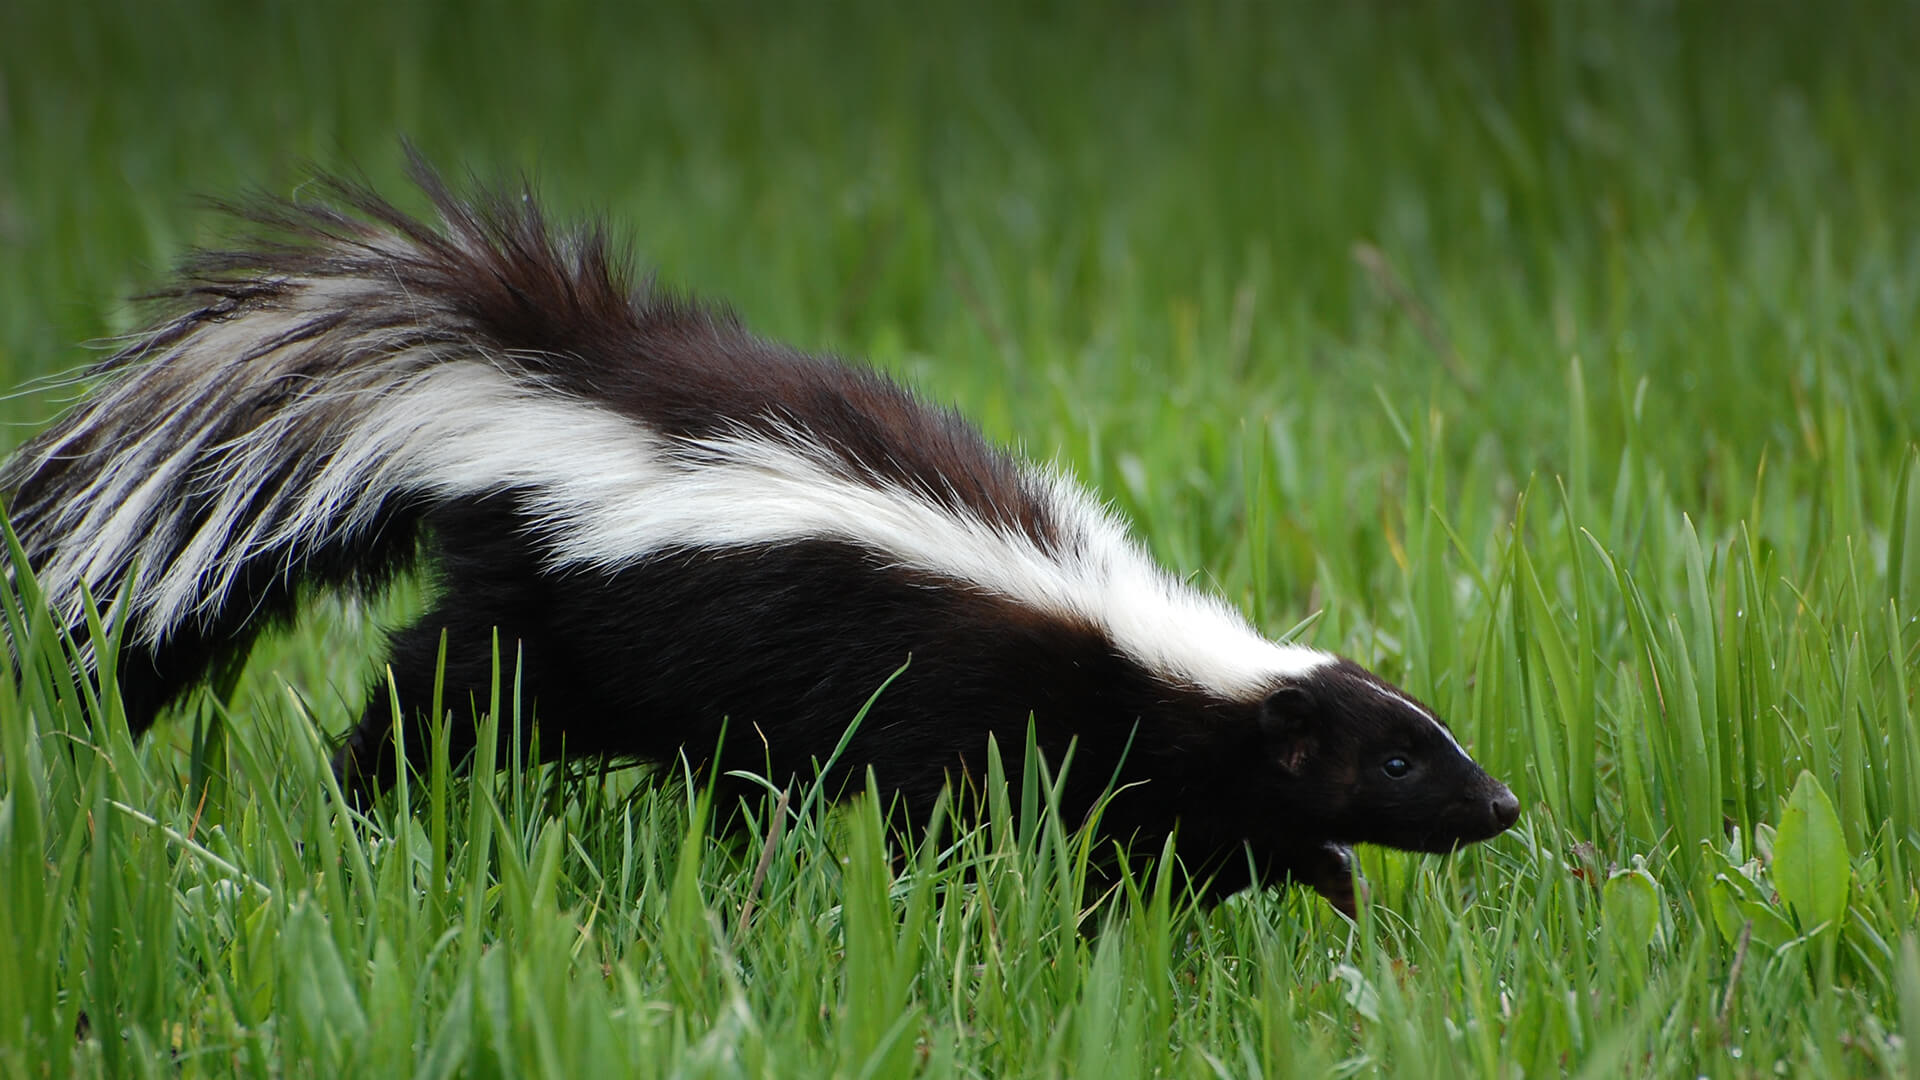 Striped skunk walking across green grass.